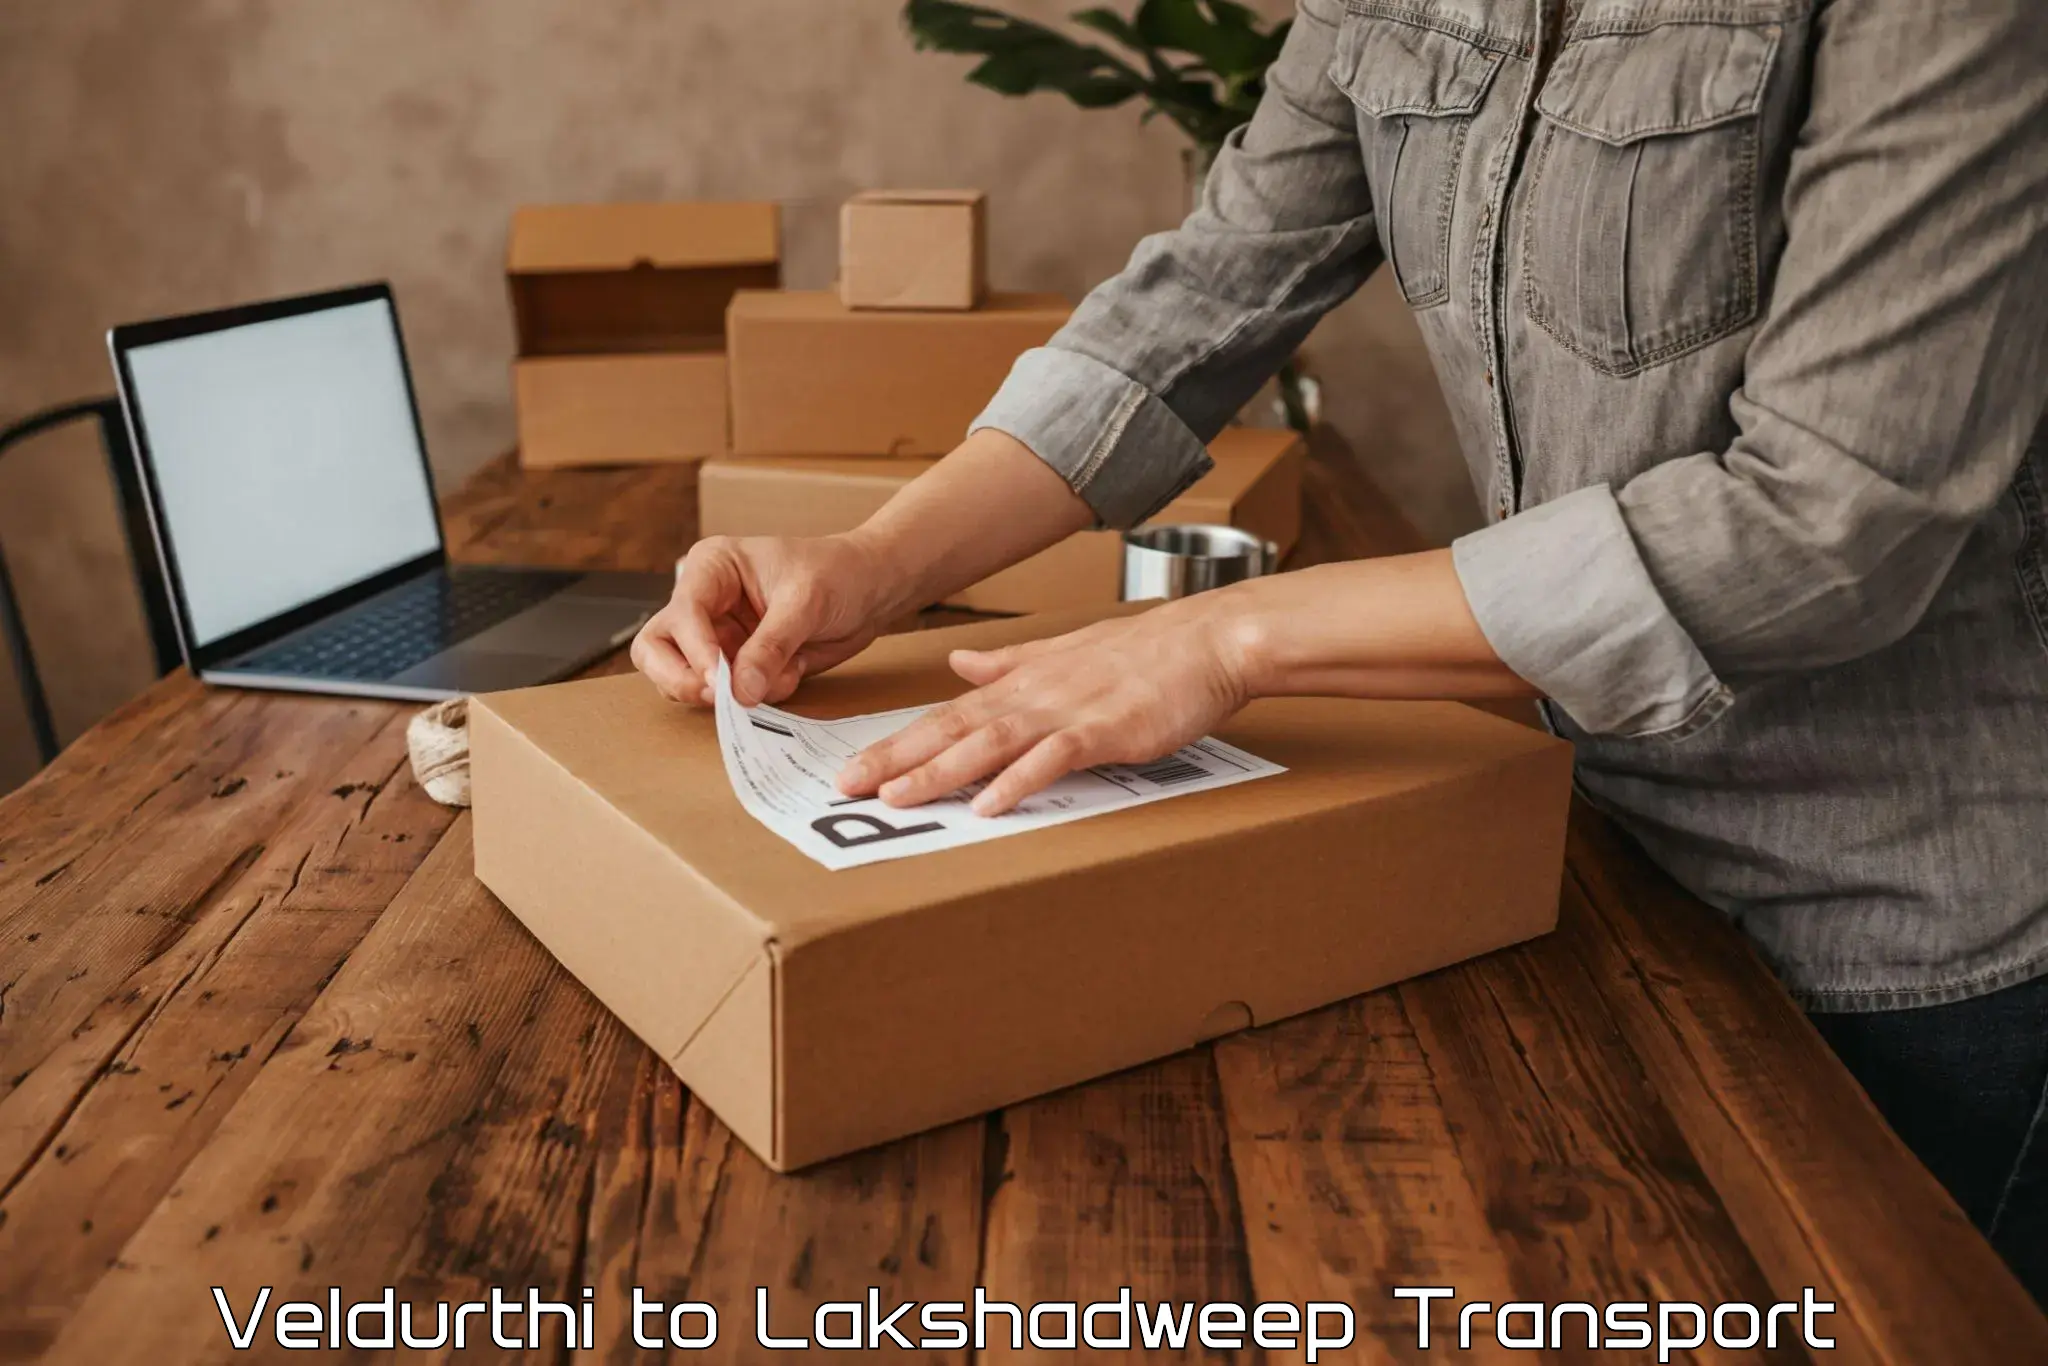 Container transportation services Veldurthi to Lakshadweep